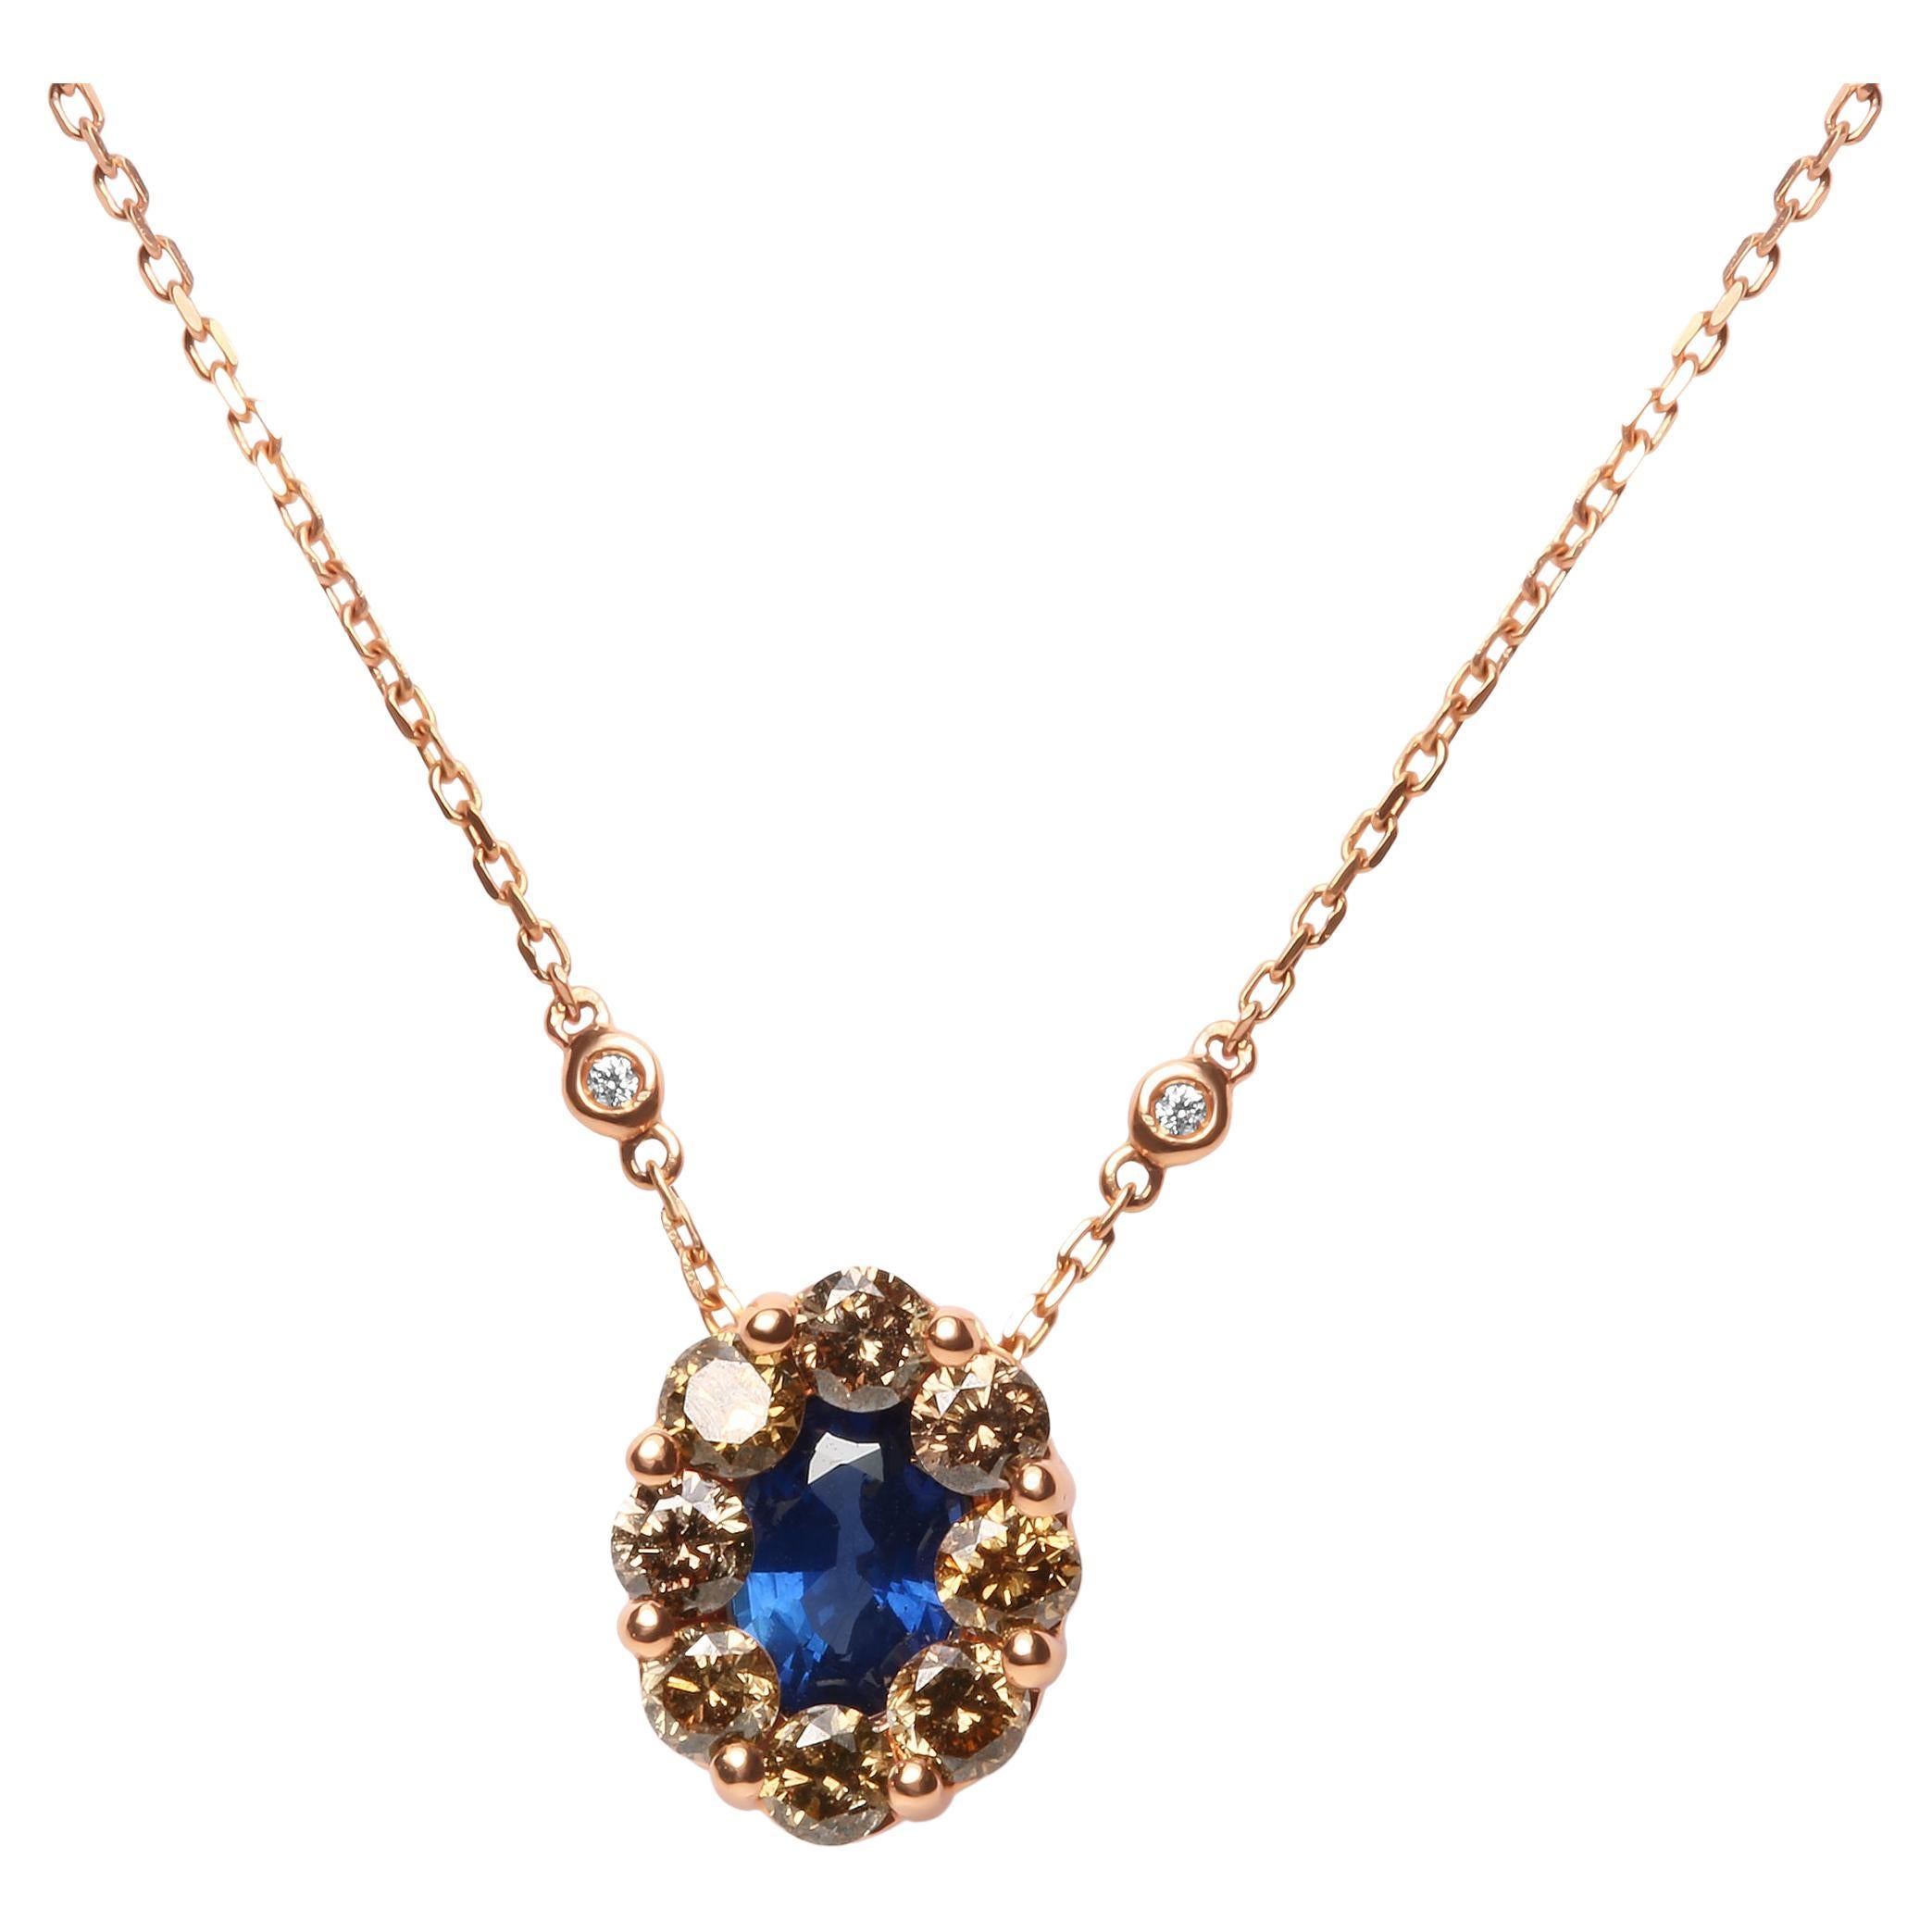 Collier à pendentif en or rose 18 carats avec diamants blancs et bruns de 5/8 carats et saphirs bleus